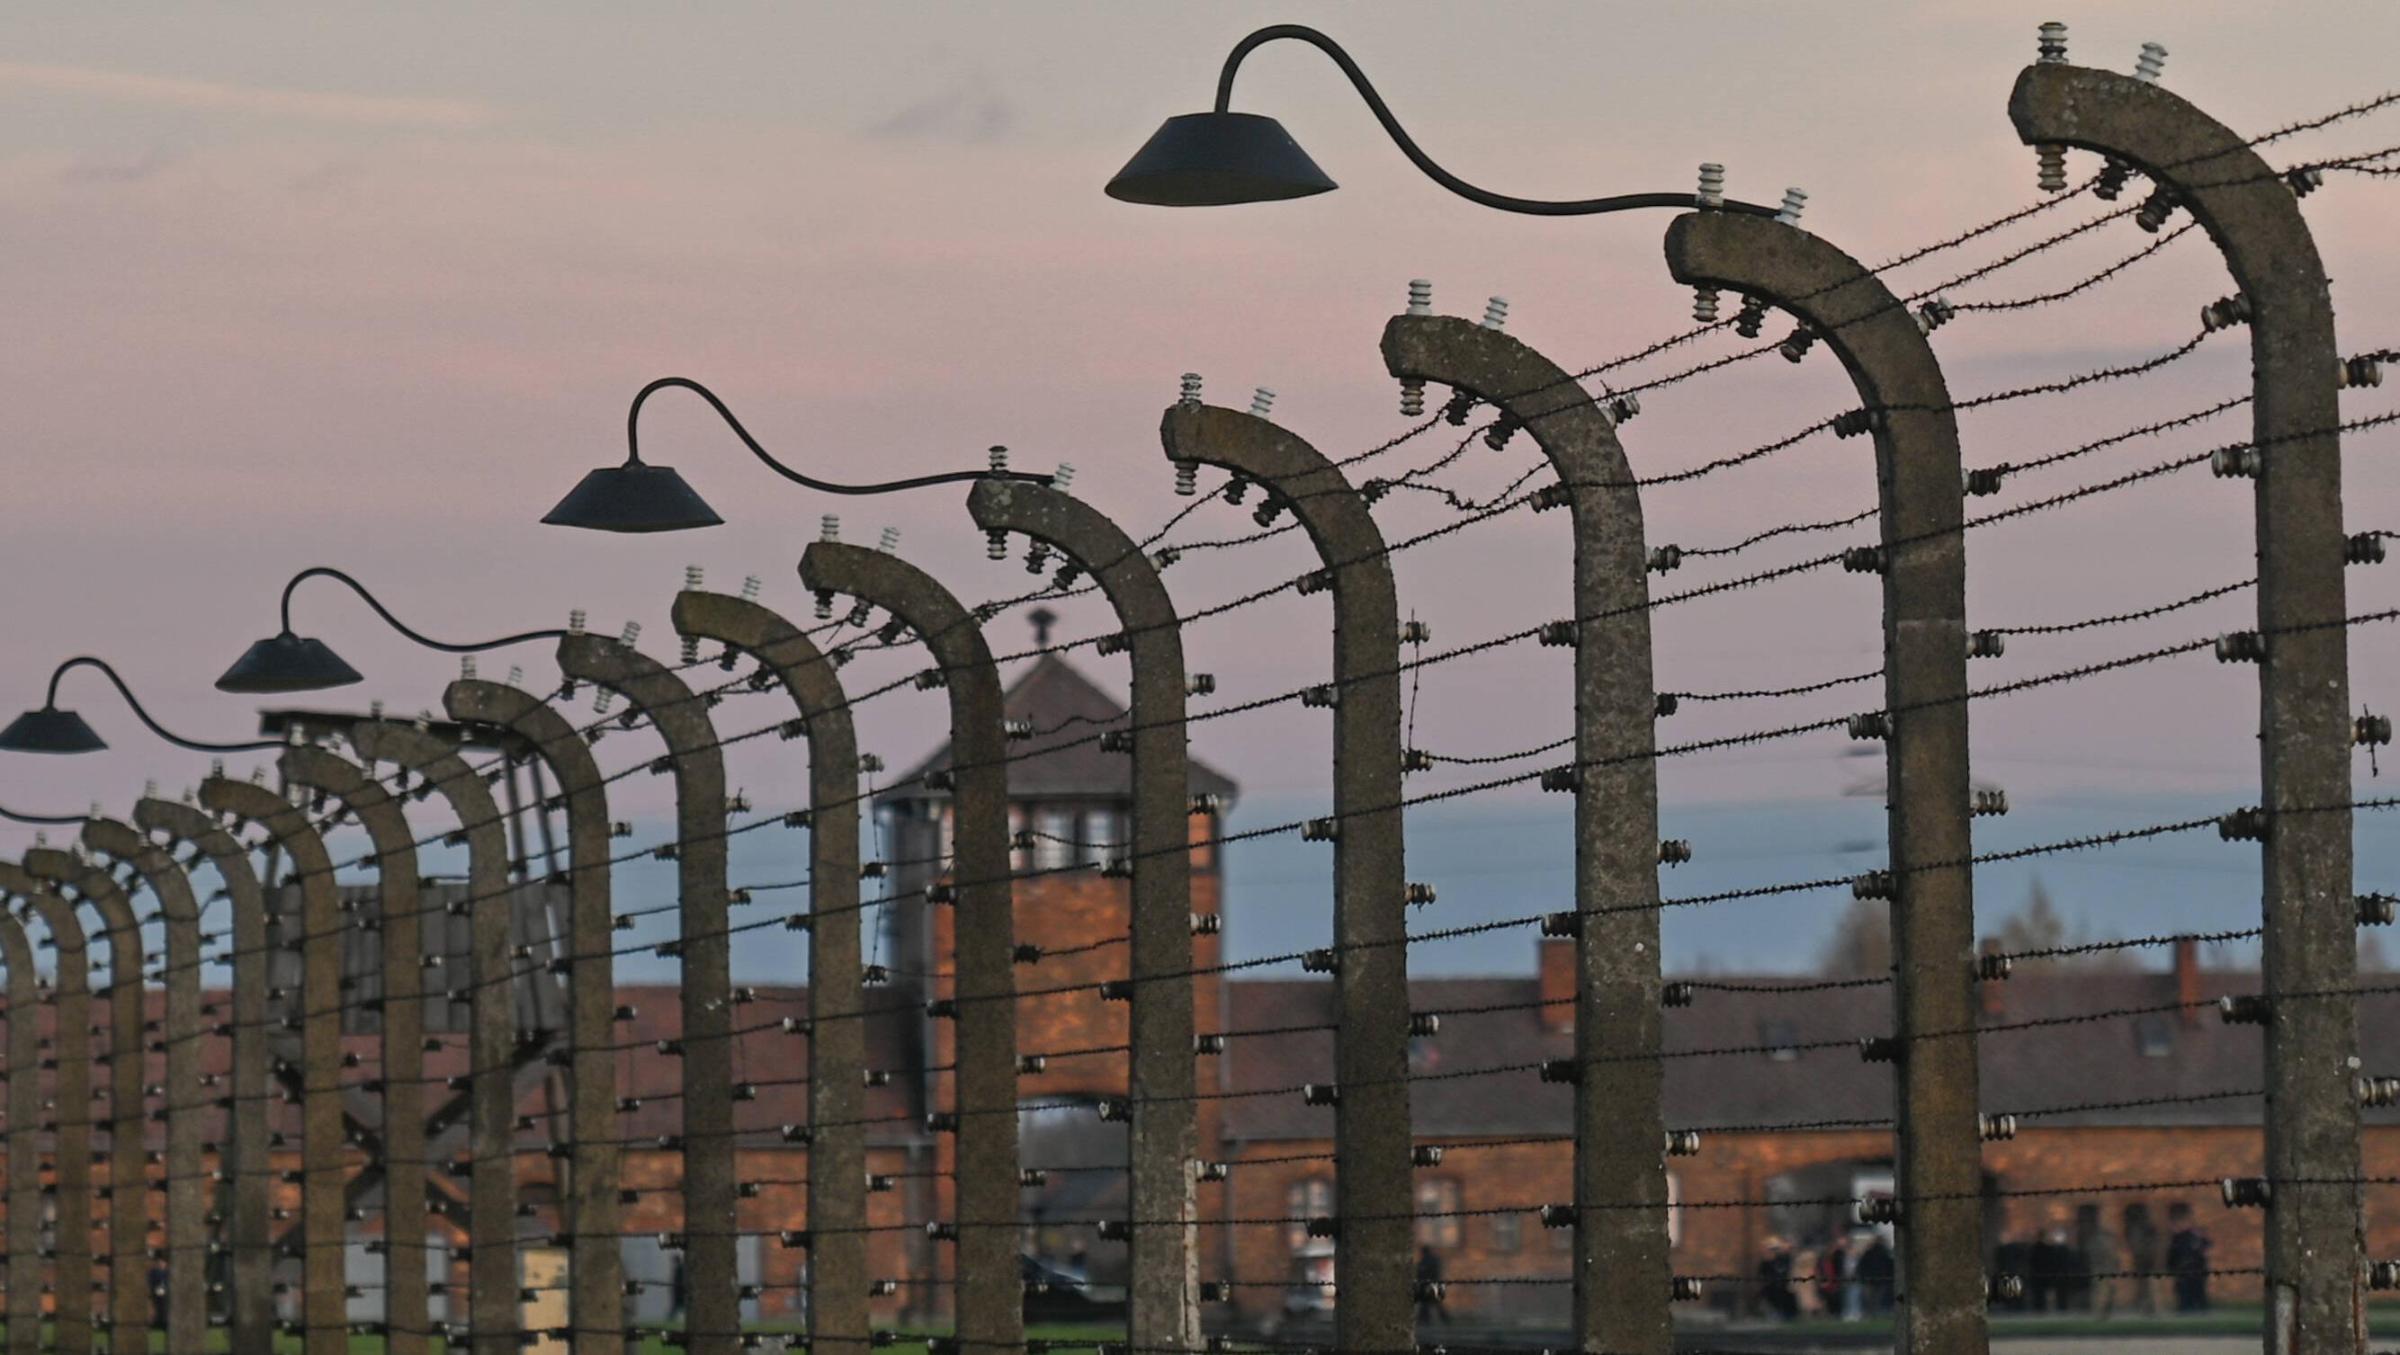 Das Bild zeigt das Torhaus des Konzentrations- und Vernichtungslagers Auschwitz-Birkenau. Es wurde am 27. Januar 1945 von sowjetischen Soldaten befreit. 